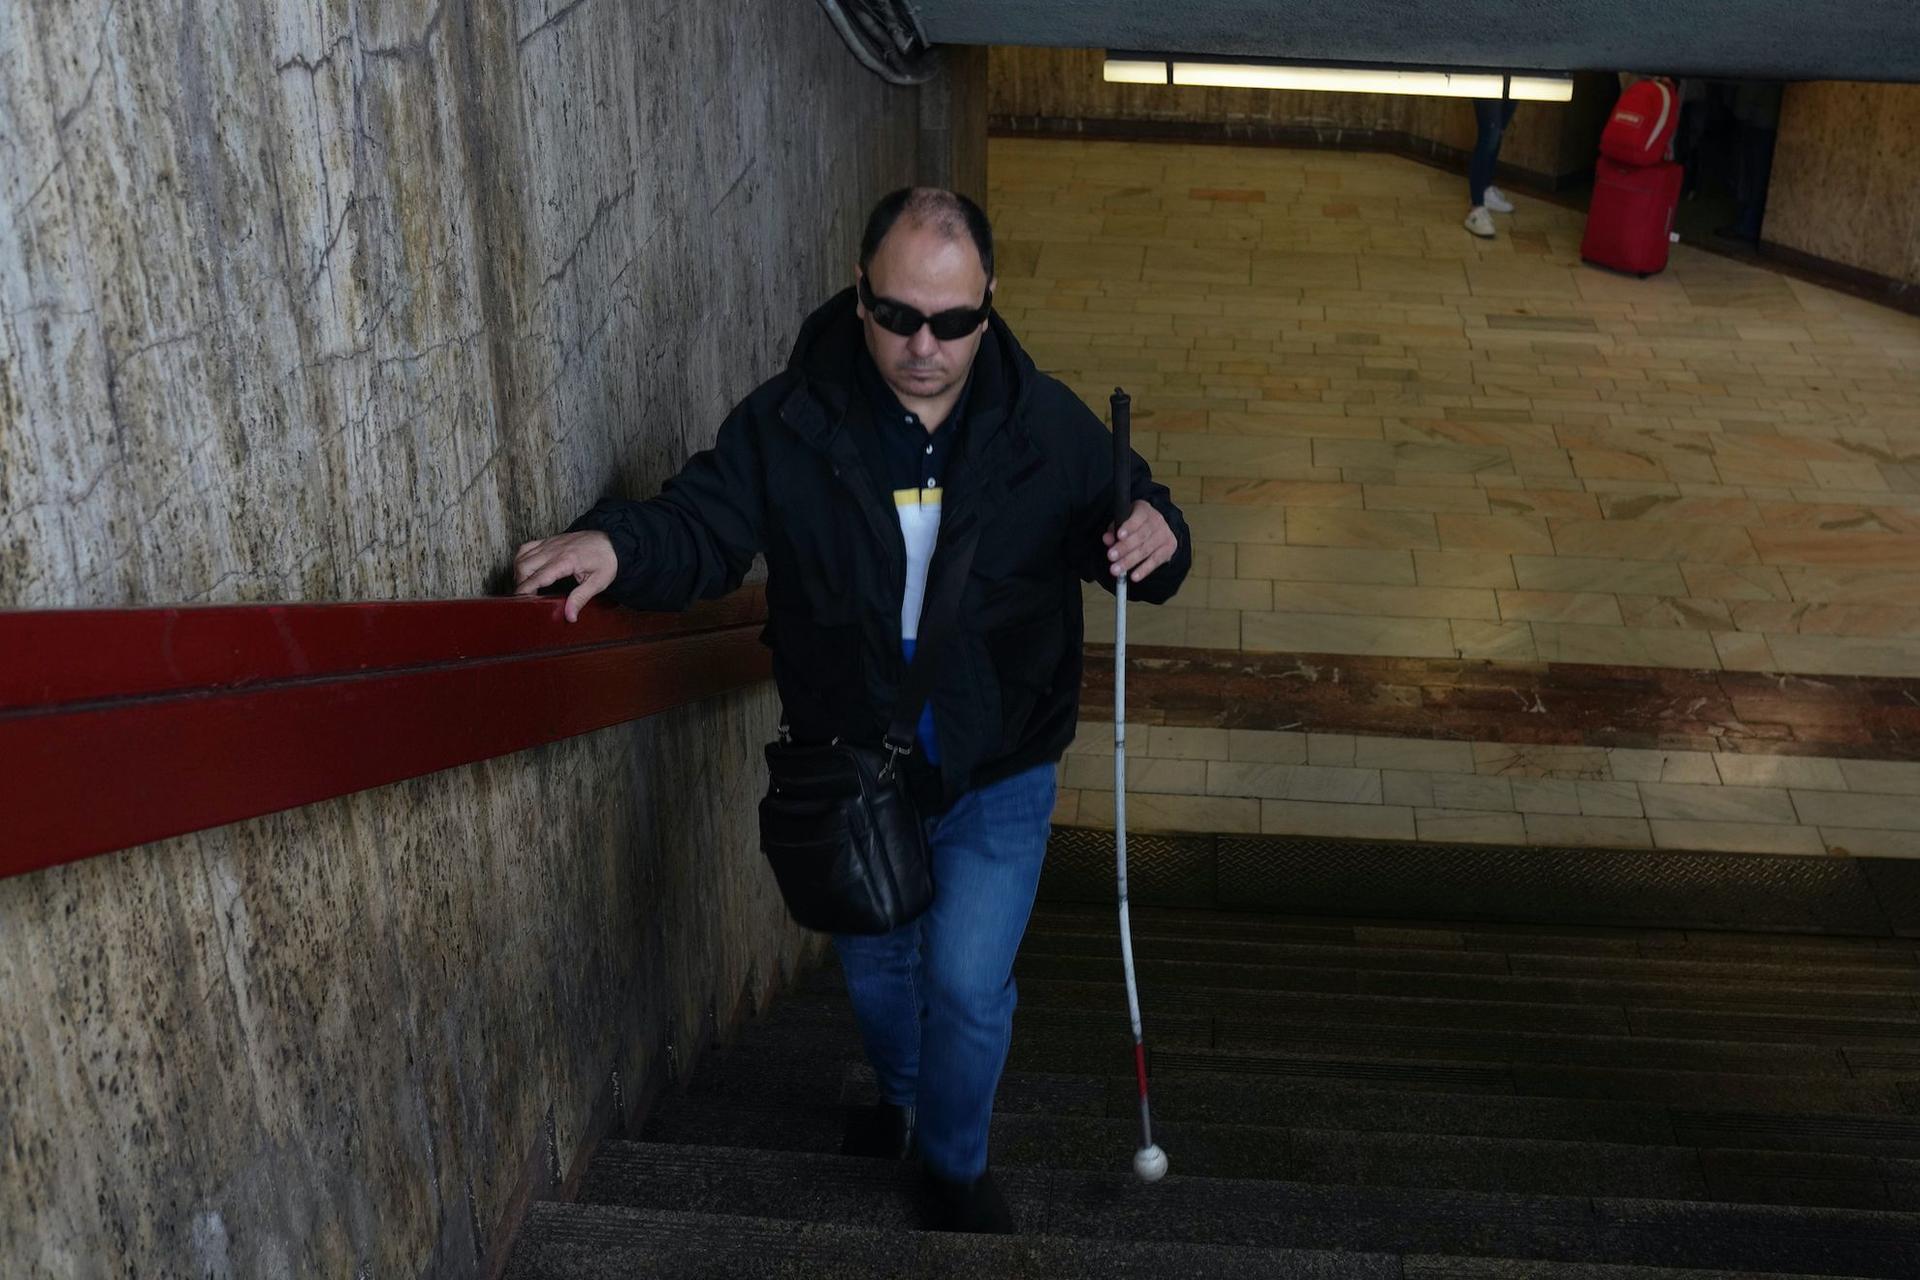 Ionuț iese de la metrou, în timpul unui traseu obișnuit pentru el, pentru a arăta cât de dificil e să se miște prin București, pe 18 noiembrie 2022. Foto: Andreea Câmpeanu